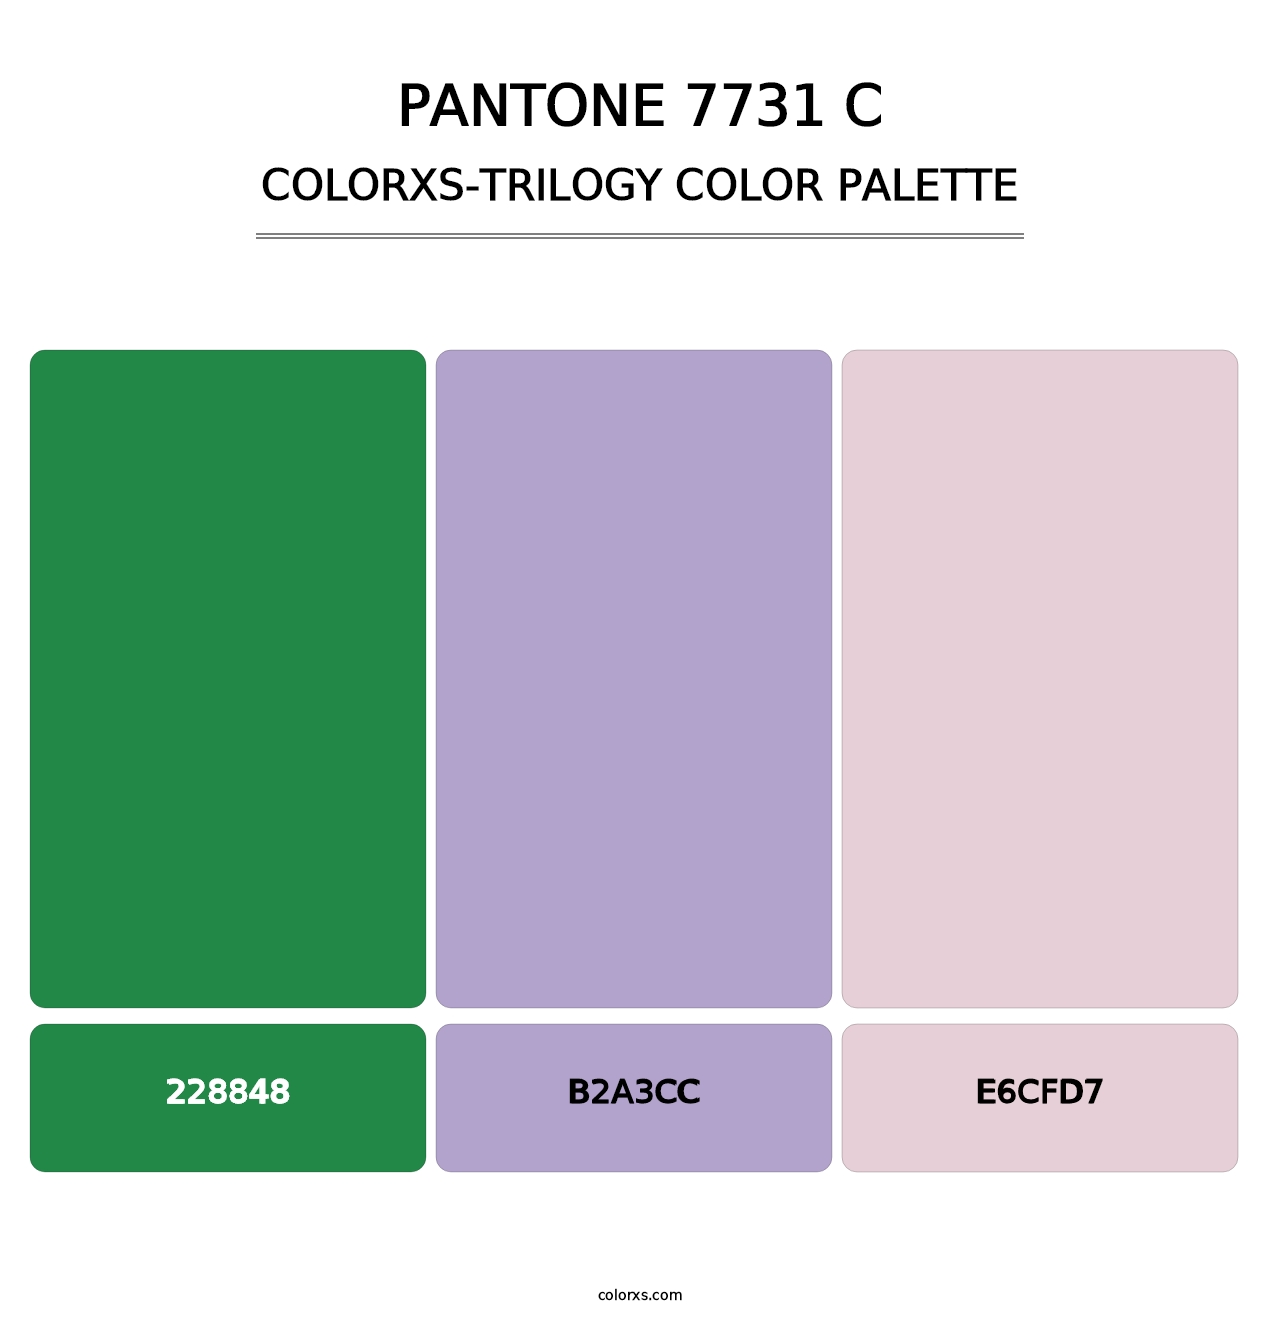 PANTONE 7731 C - Colorxs Trilogy Palette